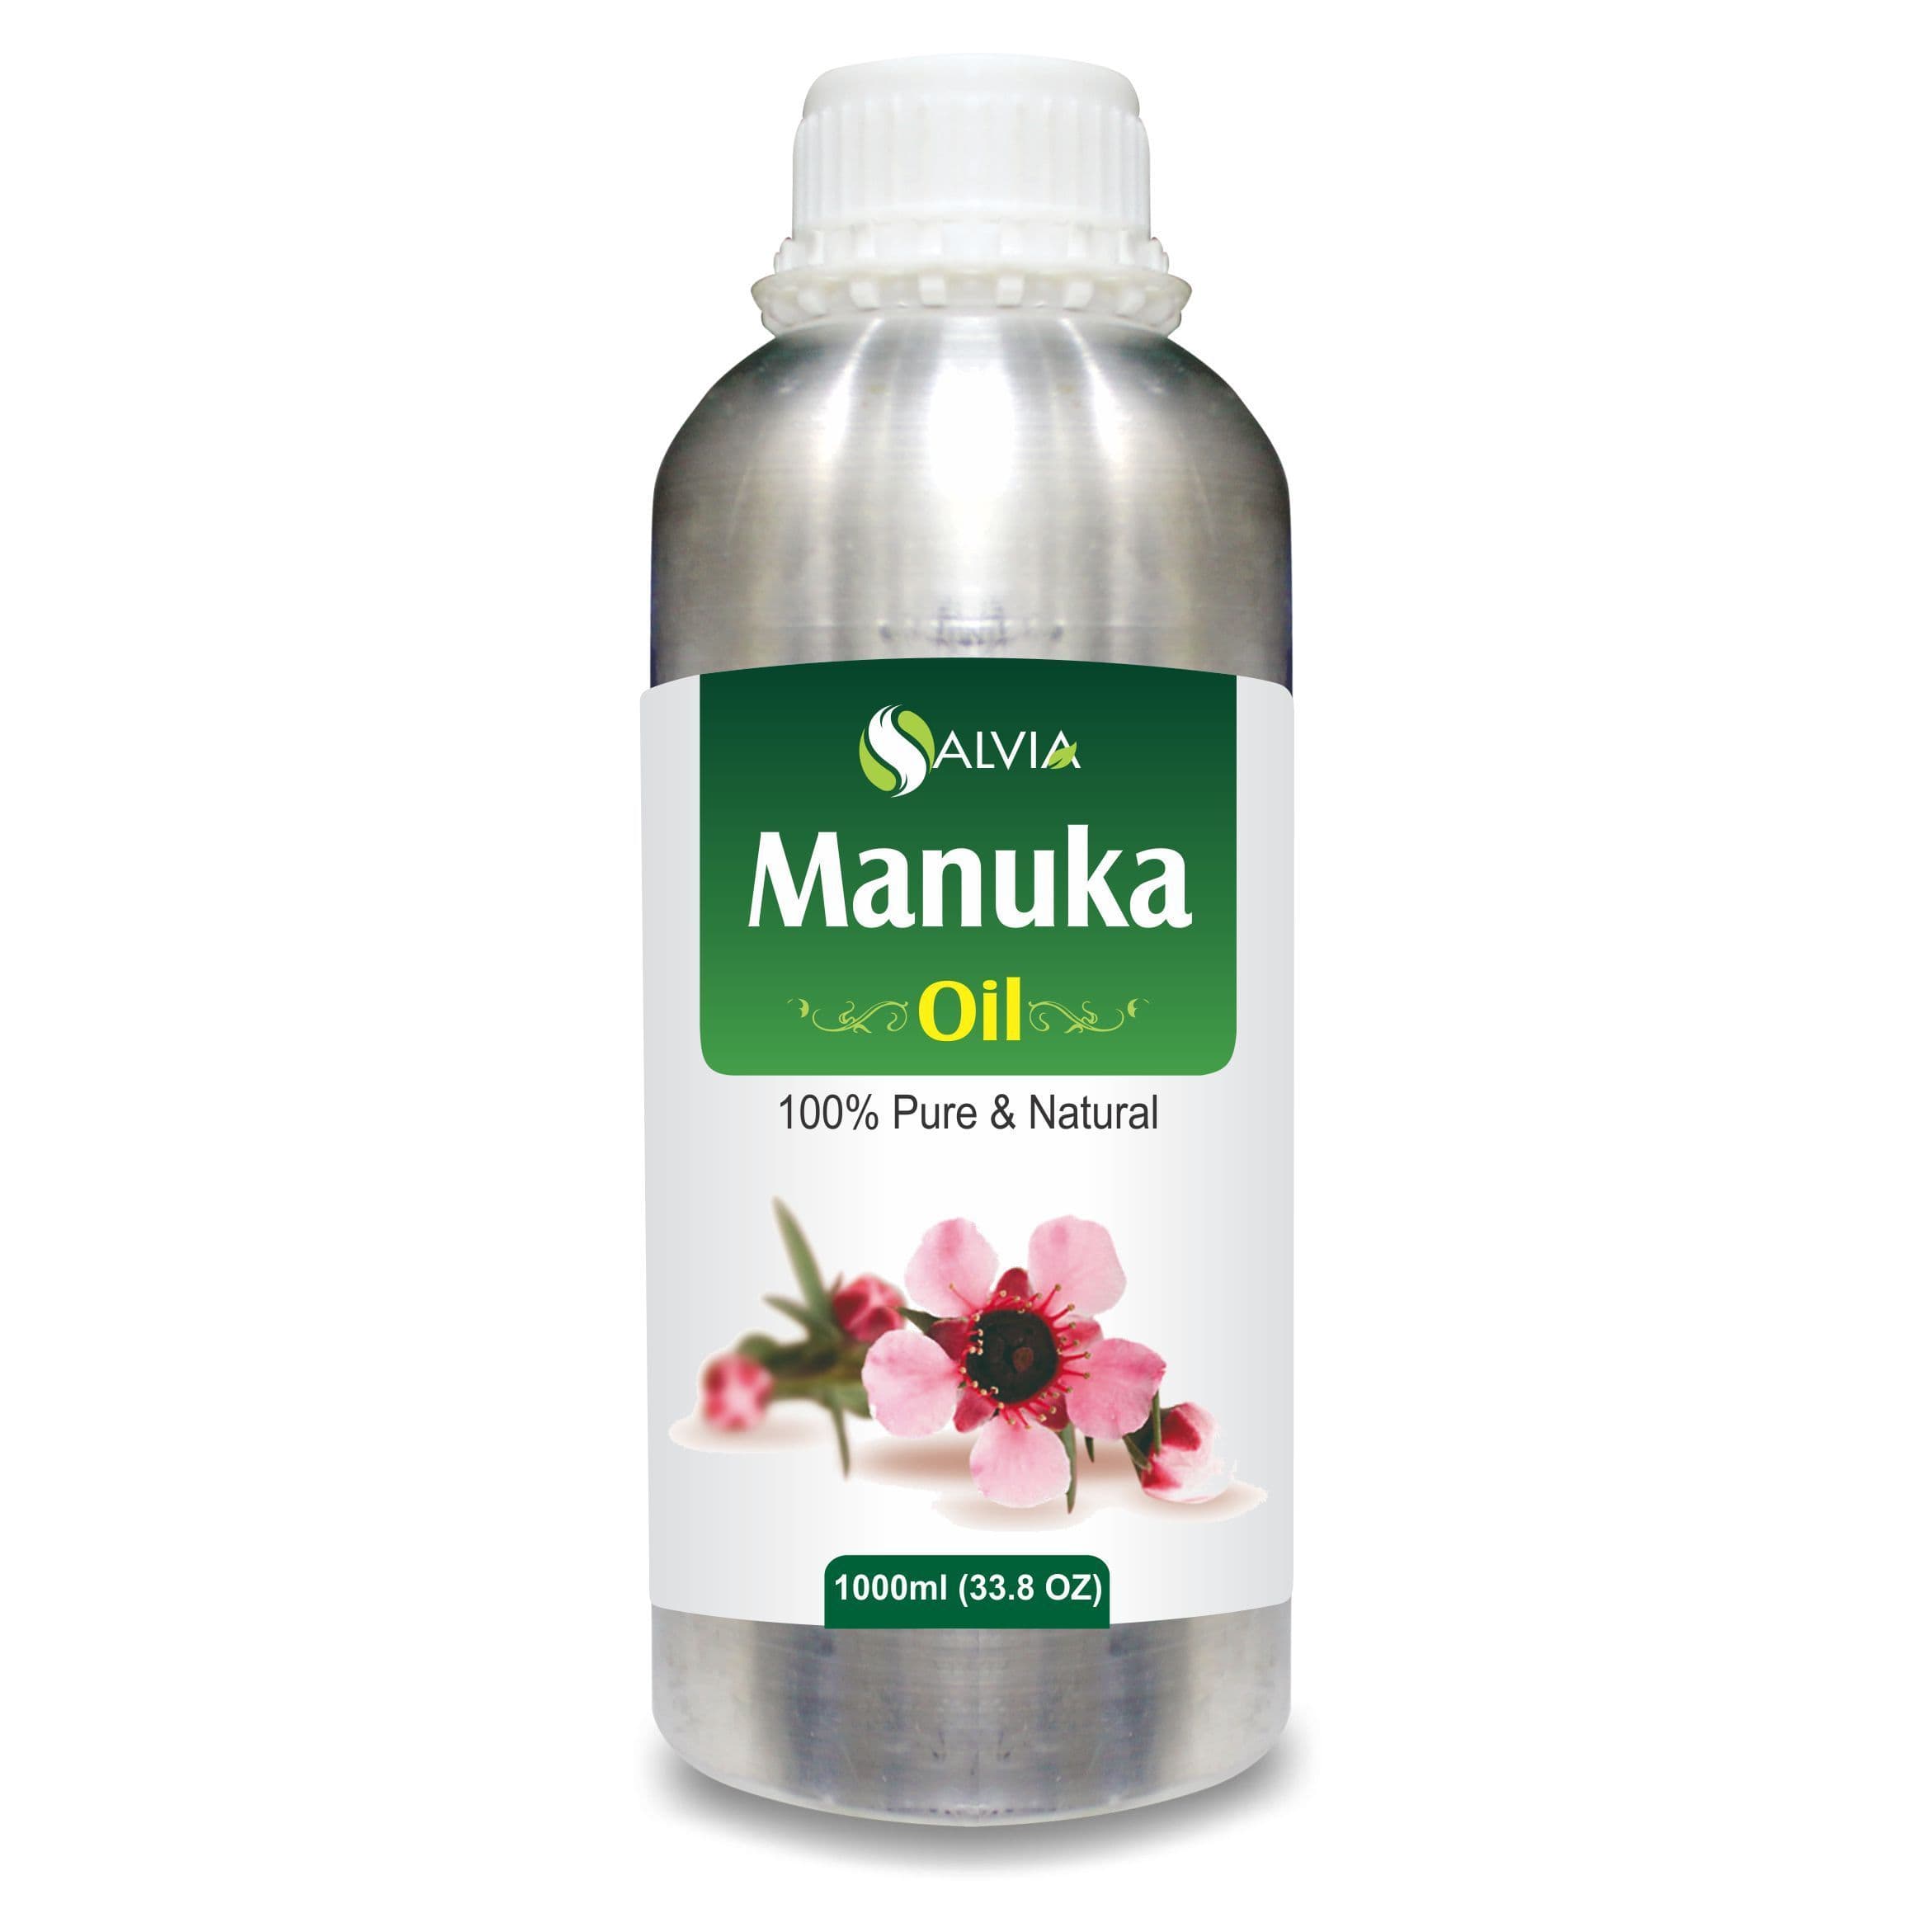 Salvia Natural Essential Oils 1000ml Manuka Oil (Leptospermum-Scoparium) Natural Pure Undiluted Essential Oil Cleanses Skin, Reduces Acne, Promotes Skin Health & More